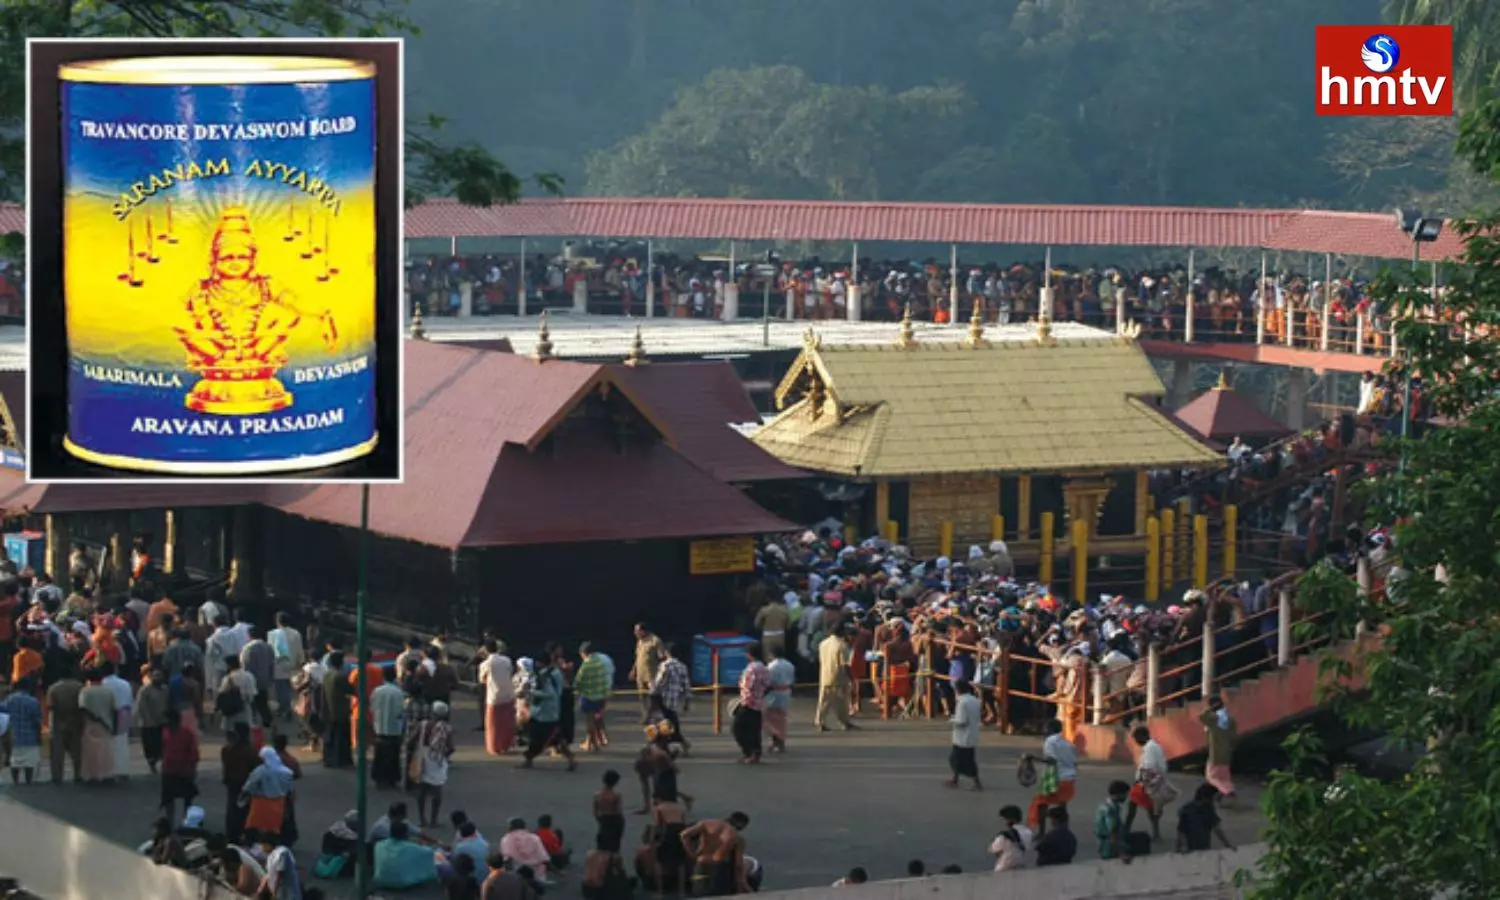 Kerala Hc Stops Distribution Of Aravana Prasadam At Sabarimala Temple